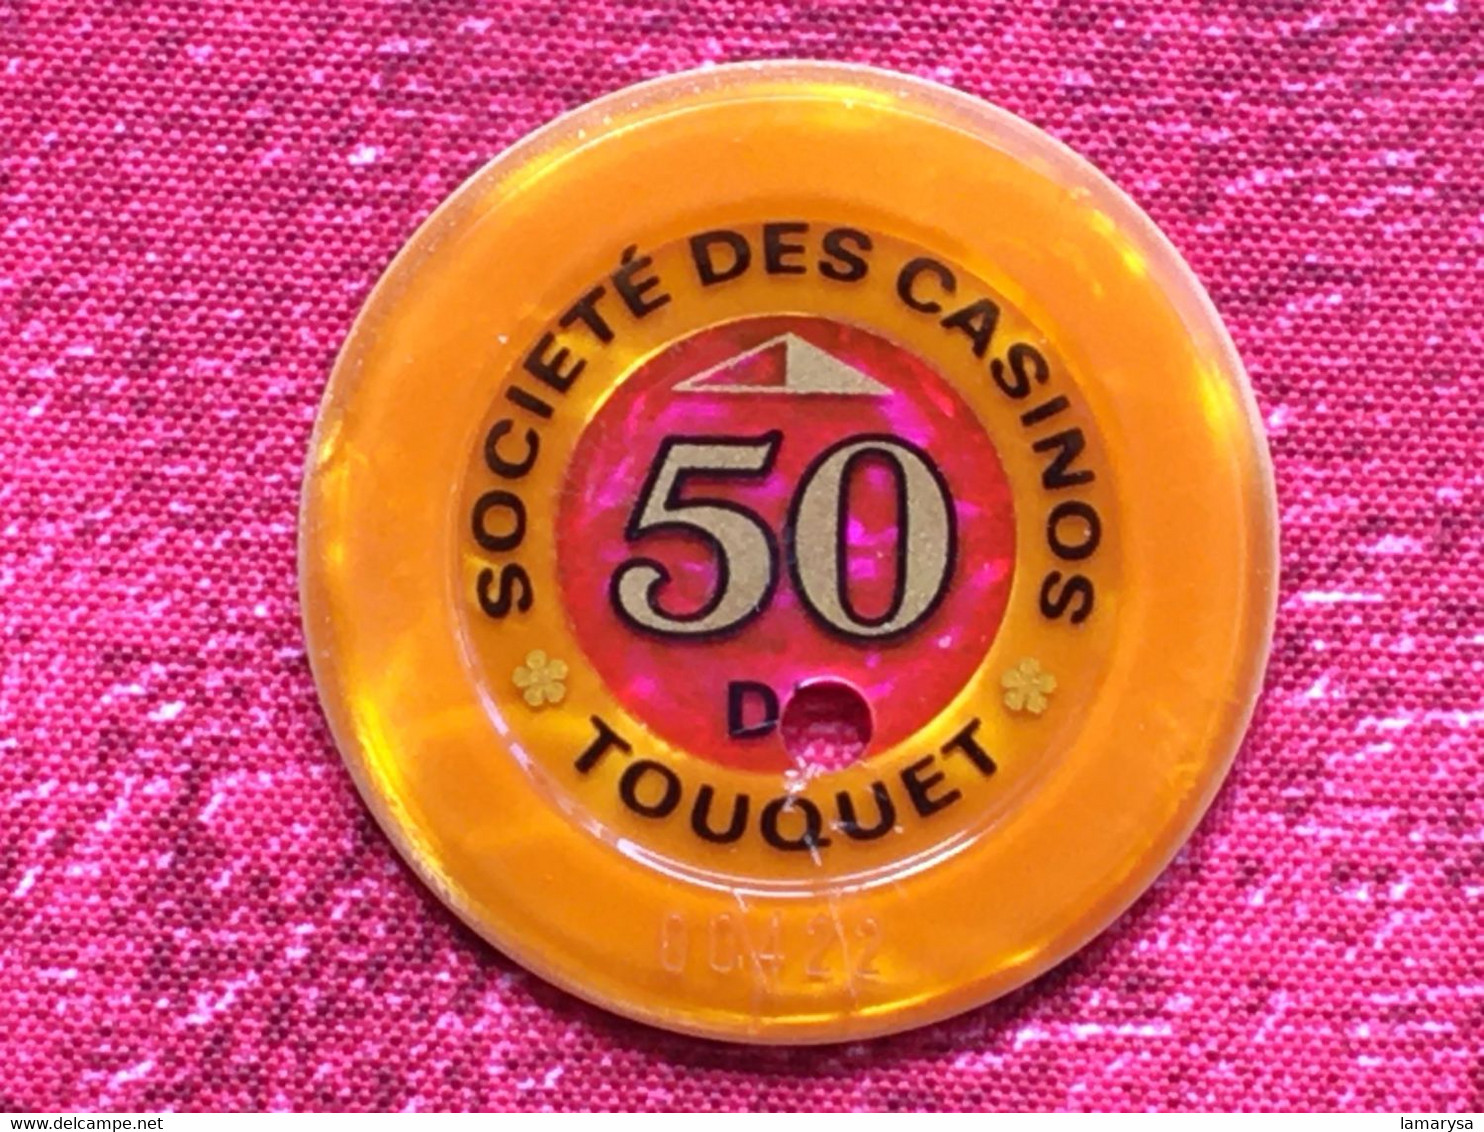 Rare Ancien Jeton En Francs Société Des Casinos Du Touquet Paris Plage-50 Du-Jeu Casino-CHIP TOKENS COINS GAMING-France - Casino